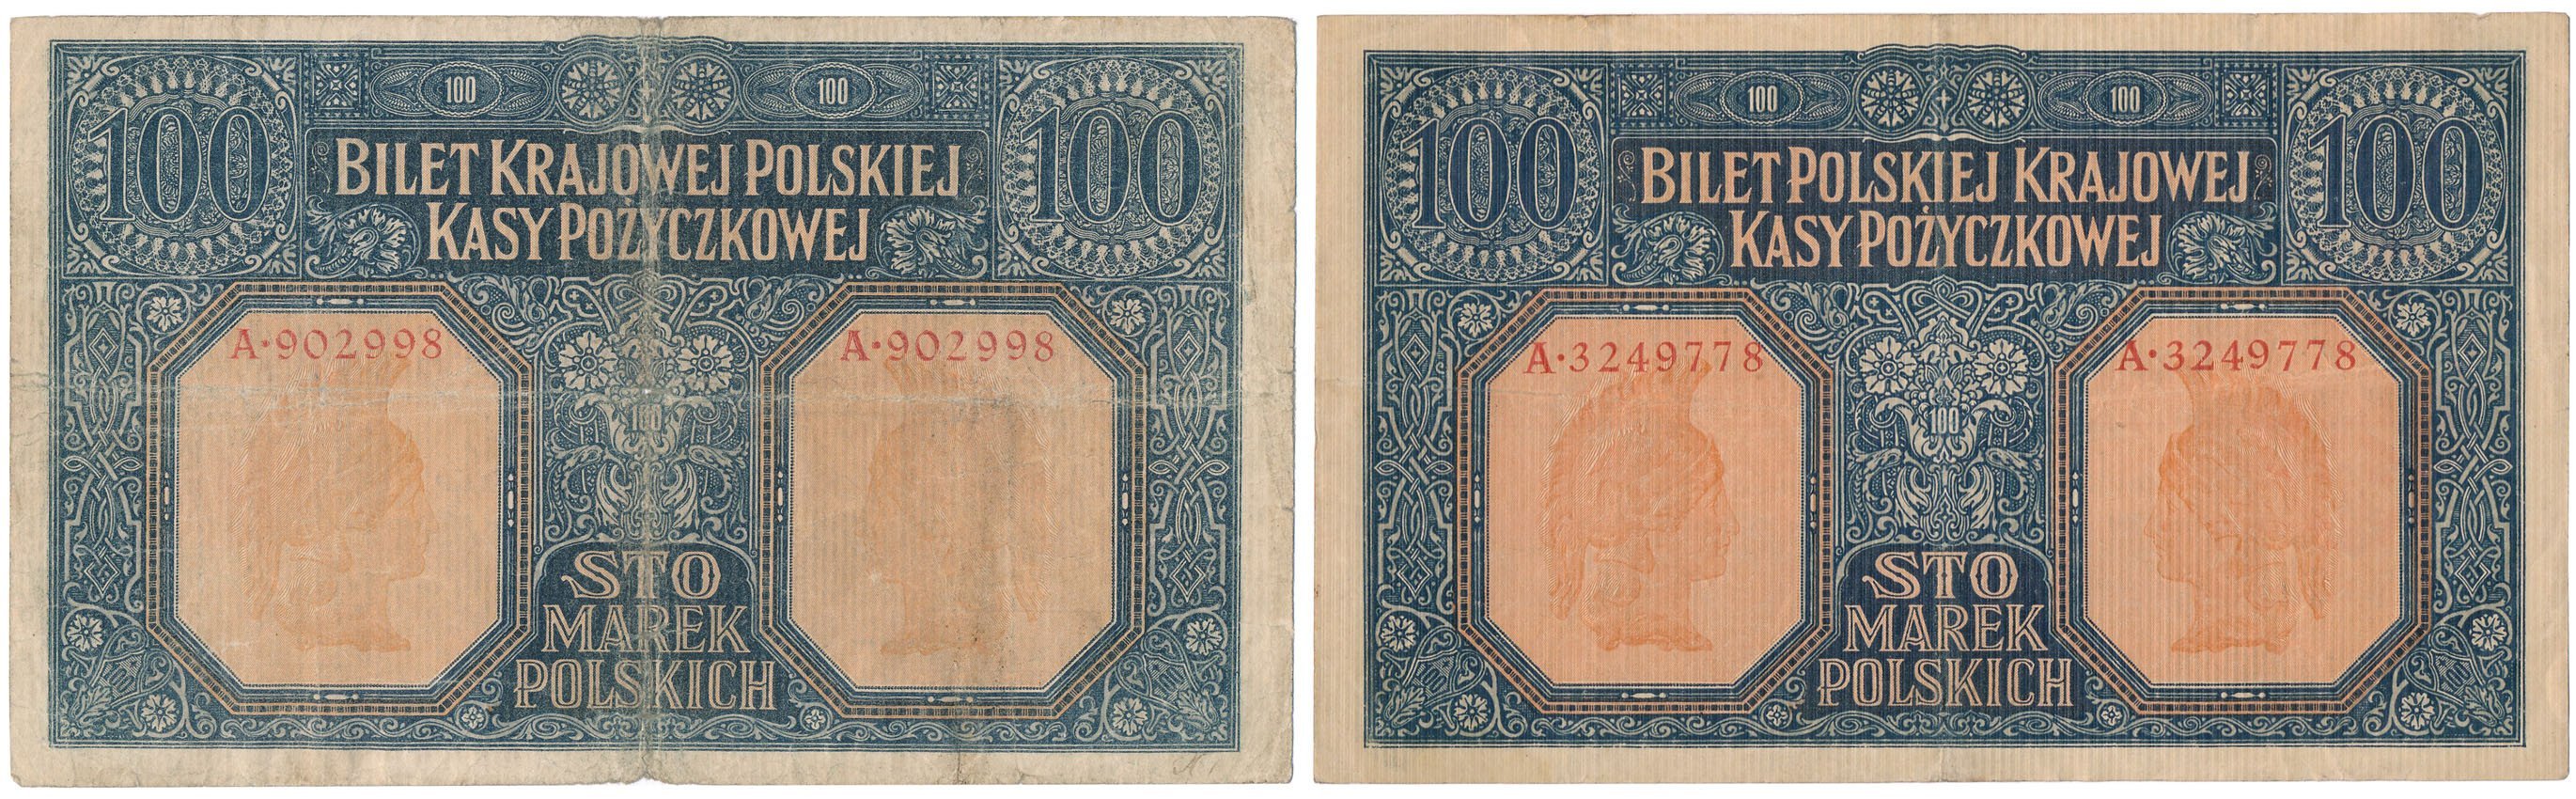 100 marek polskich 1916 seria A - GENERAŁ + JENERAŁ